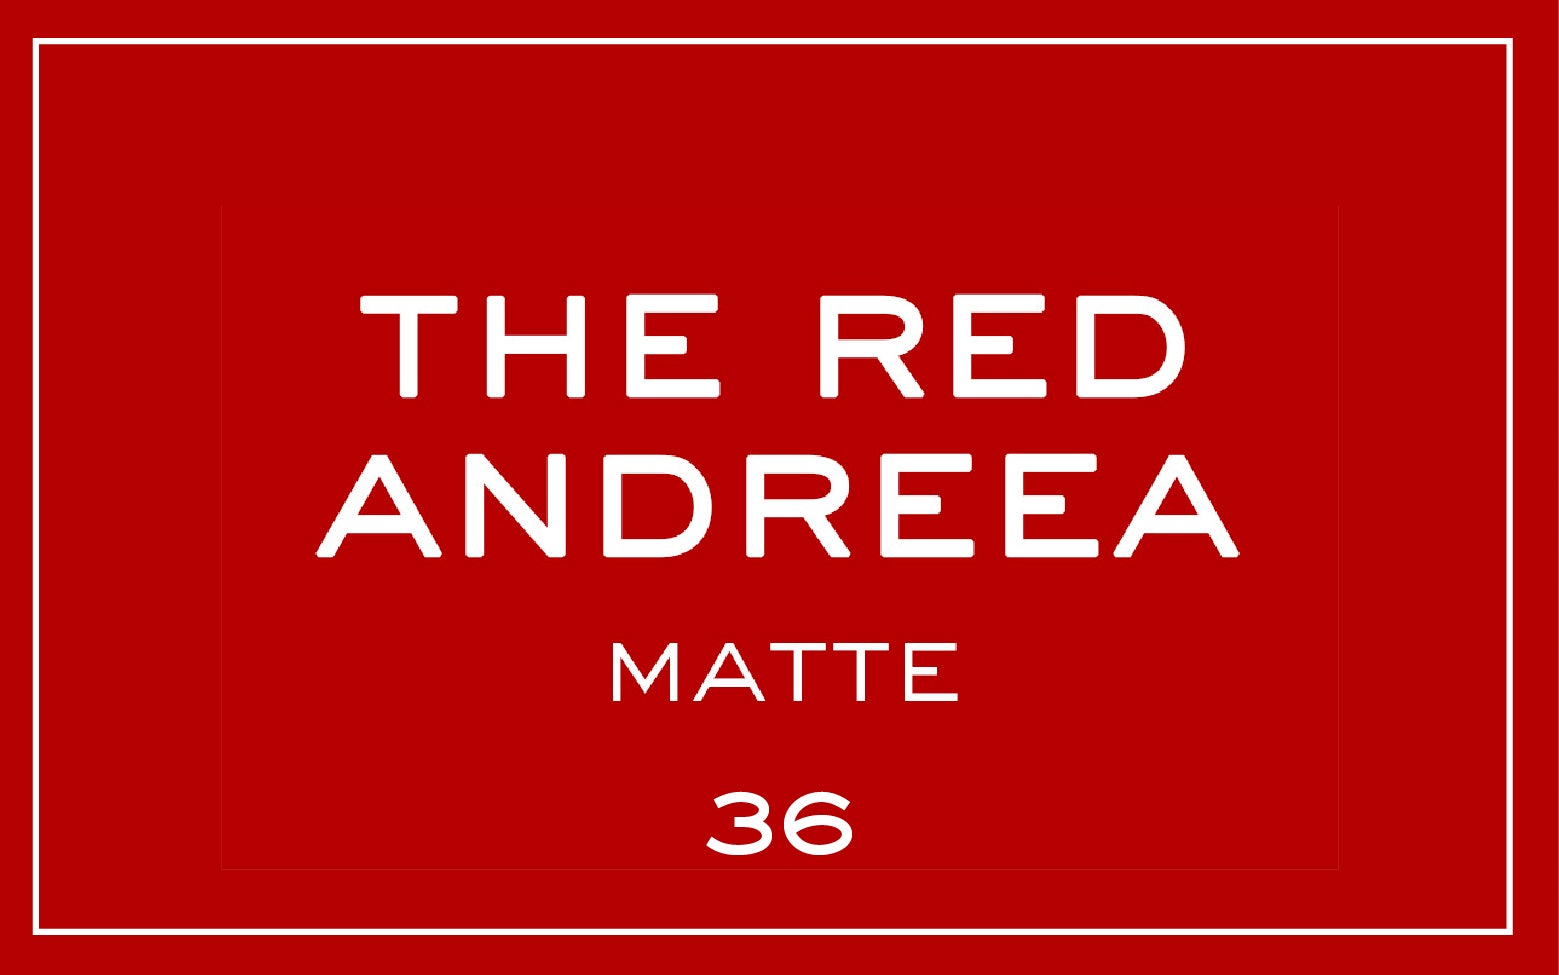 La bouche rouge nuance du rouge à lèvres The Red Andreea avec du texte 